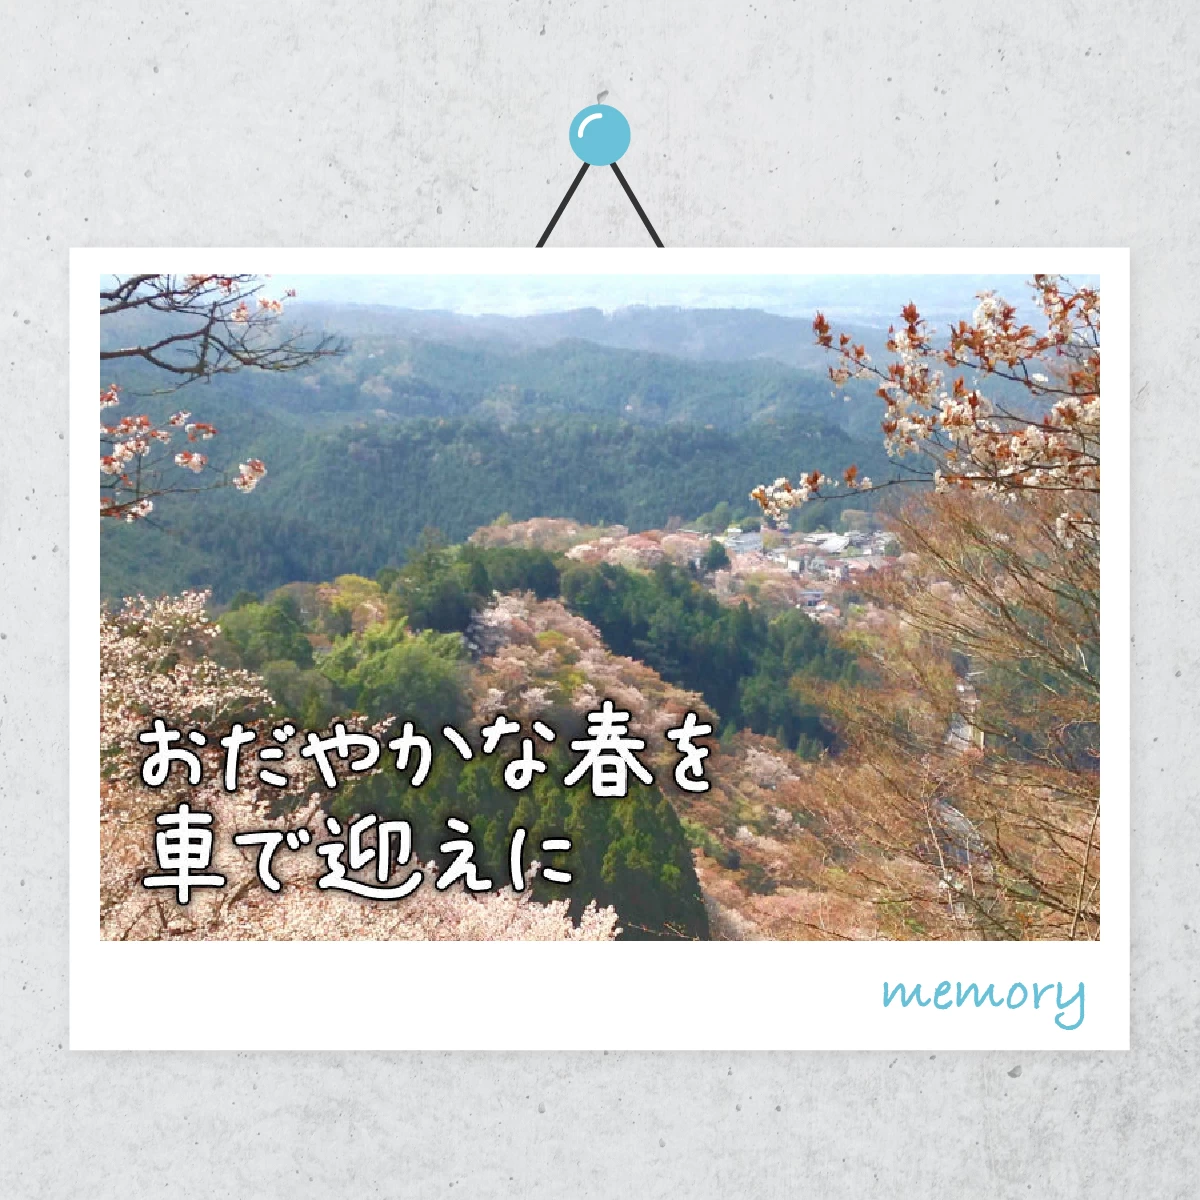 吉野山の桜にうっとり  日本文化を感じる夫婦旅